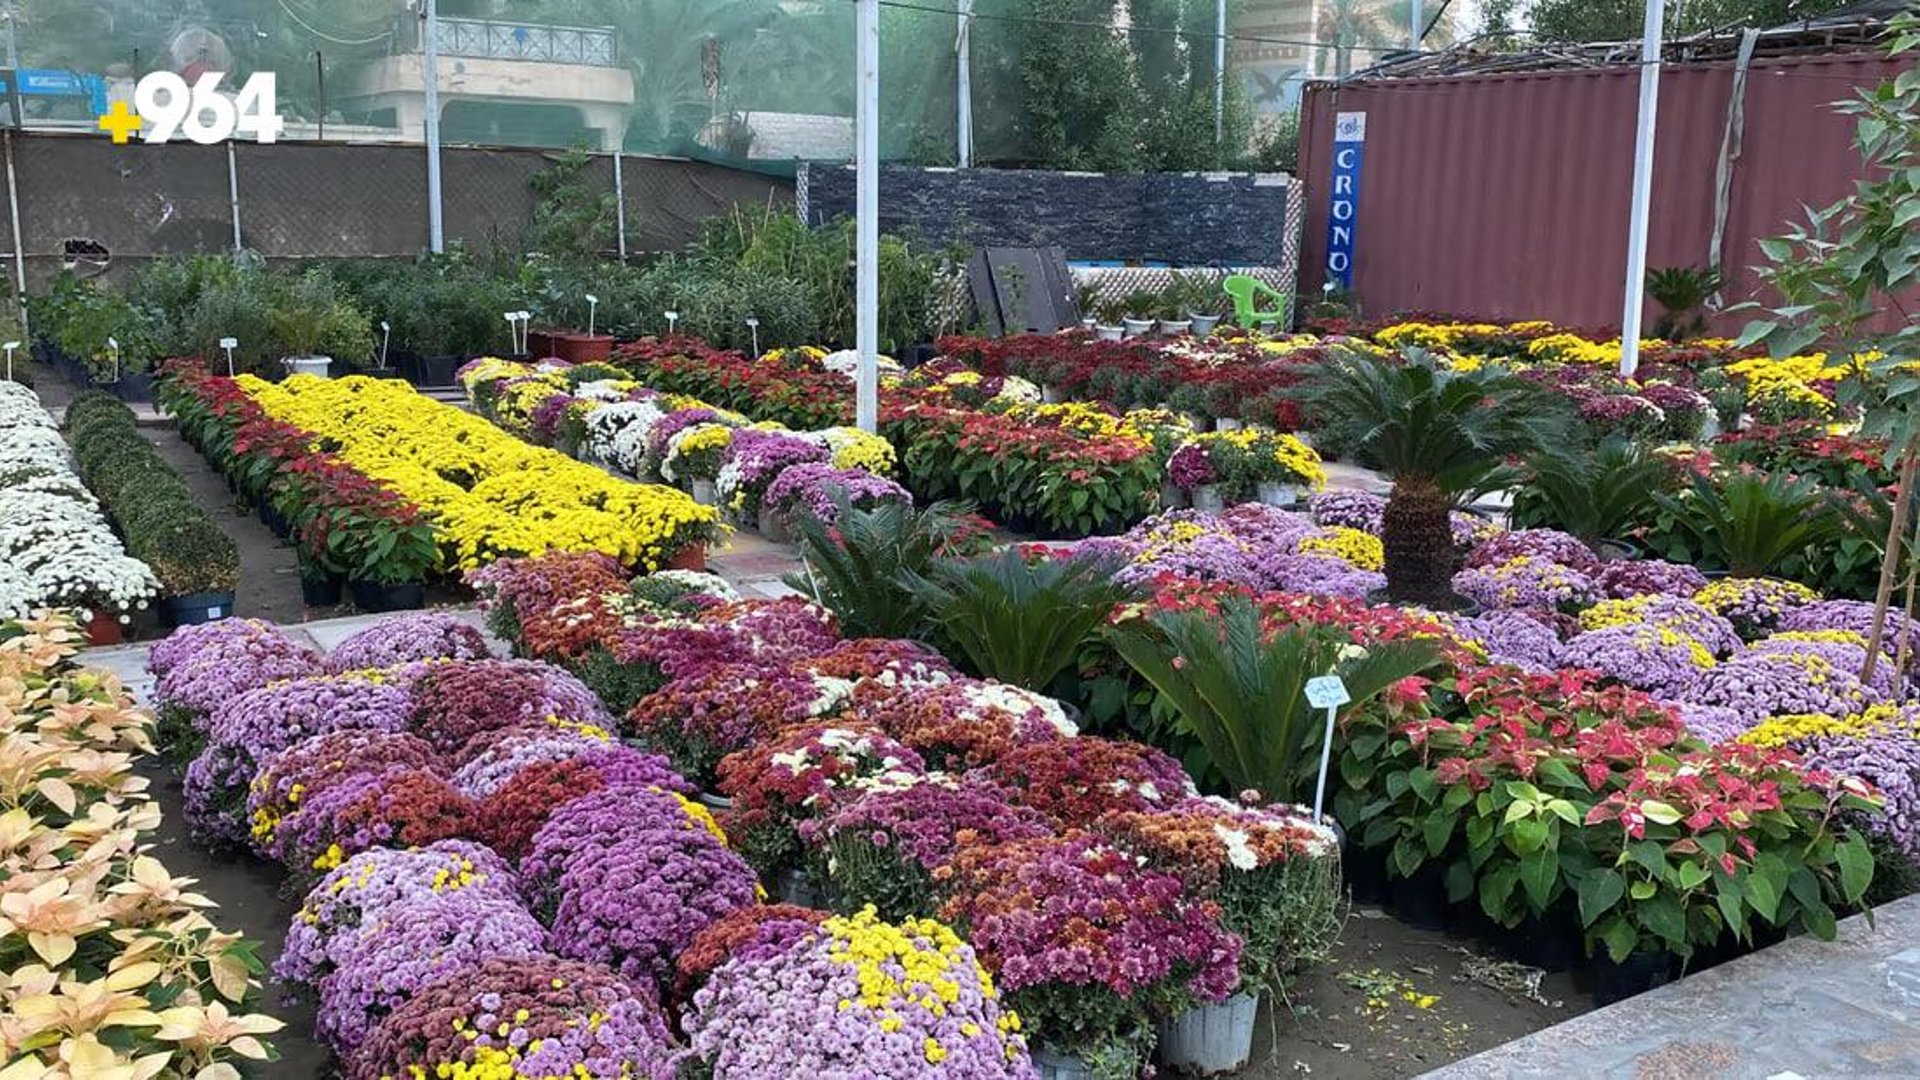 PHOTOS Nasiriyah flower exhibition encourages locals to pick up gardening